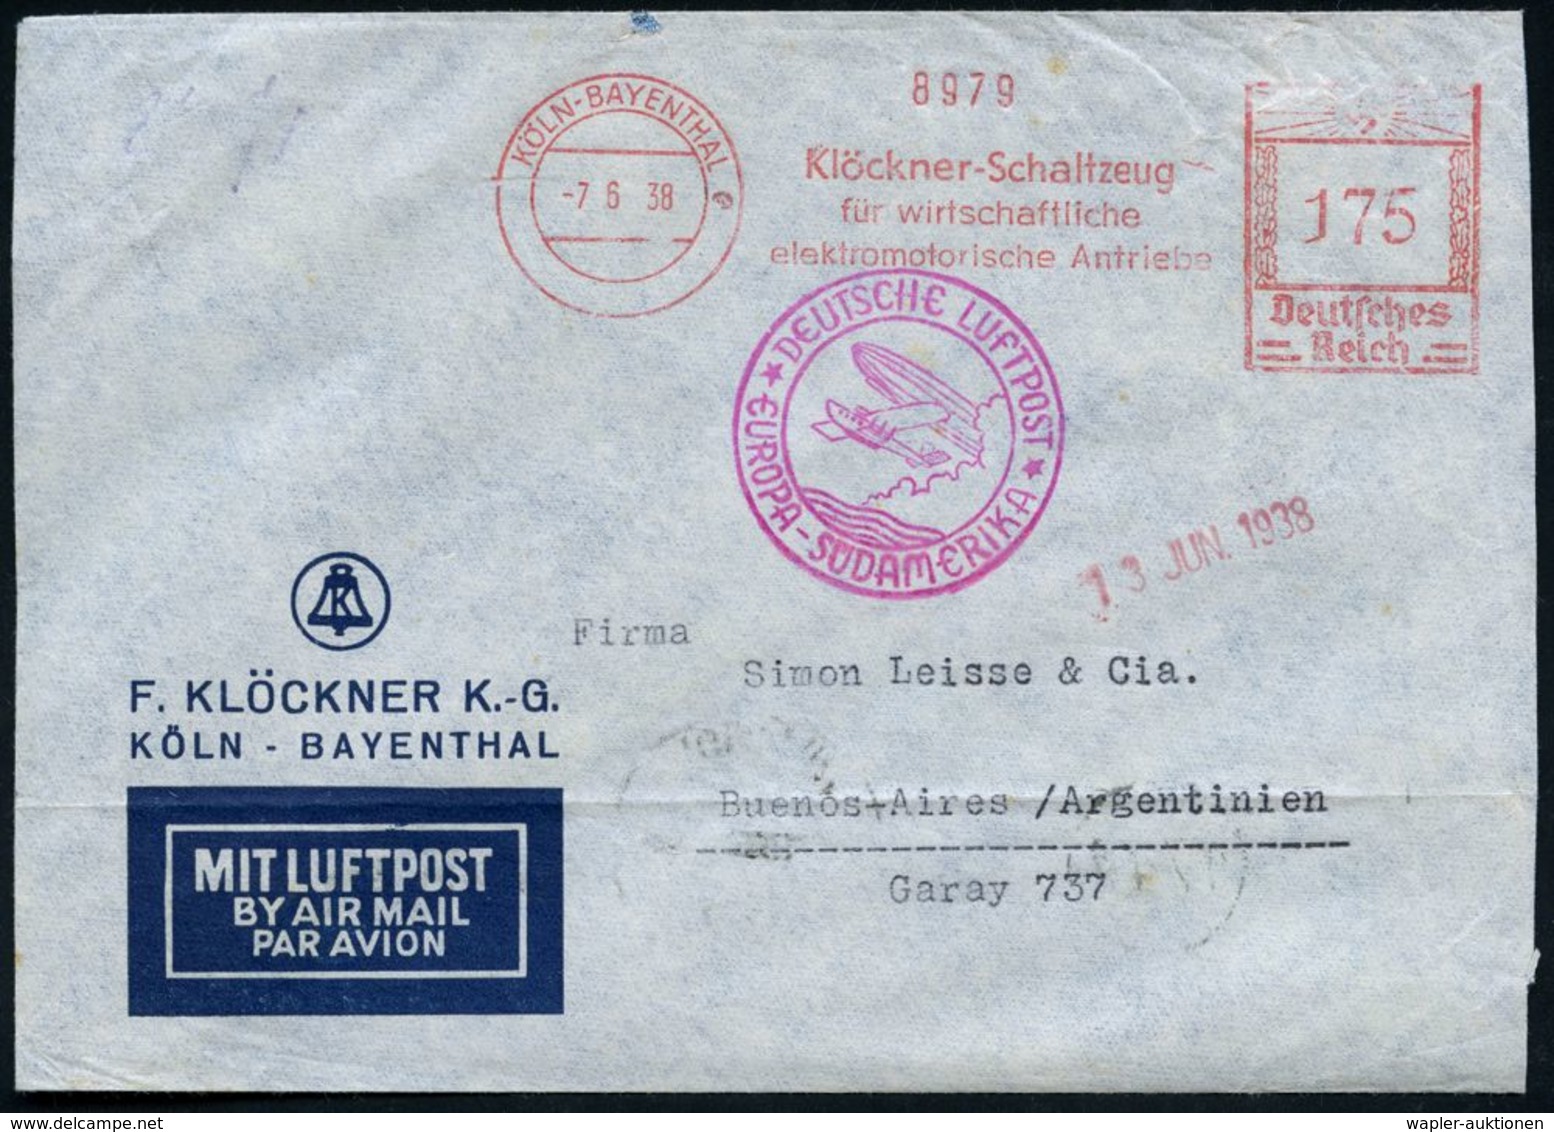 KÖLN-BAYENTHAL/ Klöckner-Schaltzeug.. 1938 (7.6.) AFS 175 Pf. + Lila Katapult-HdN:*DEUTSCHE LUFTPOST*/ EUROPA-SÜDAMERIKA - Andere (Lucht)